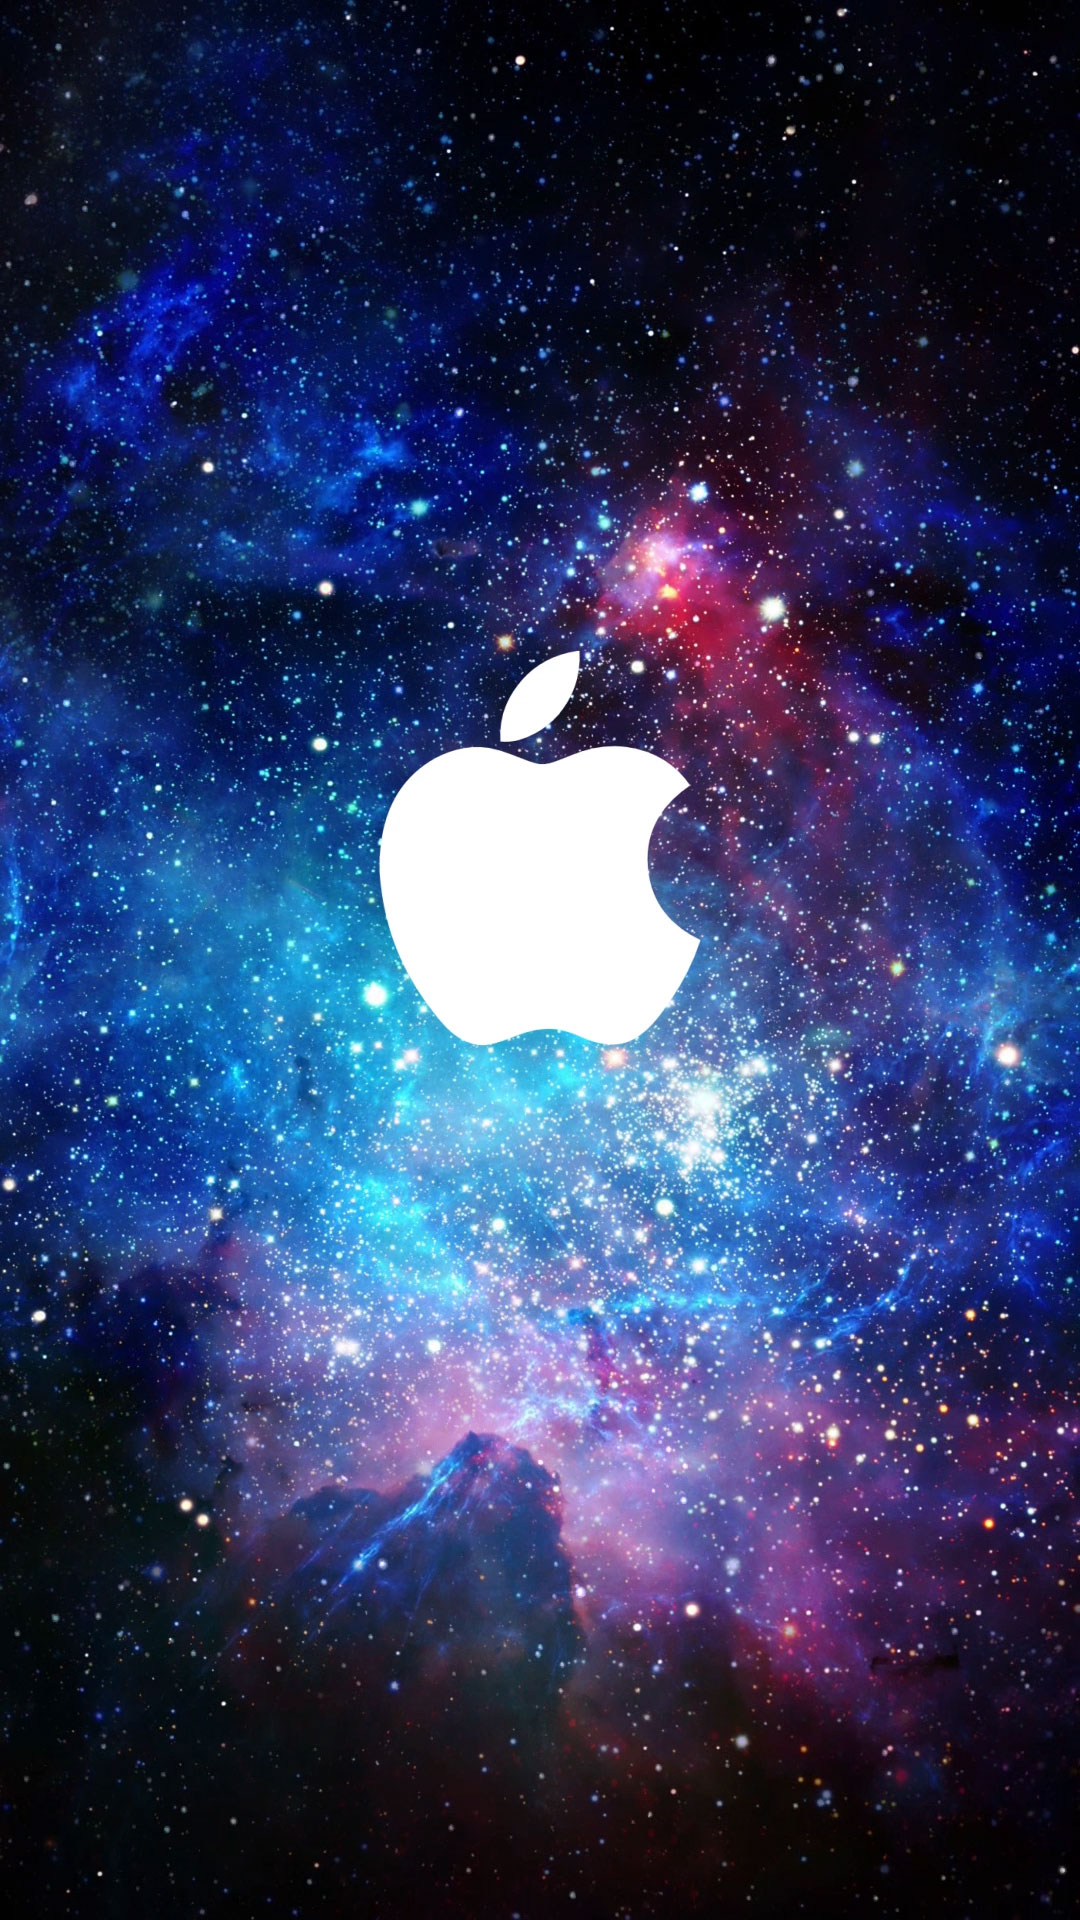 童话故事里的红苹果动态壁纸- 动态壁纸下载,mac高清壁纸,主题壁纸下载未来mac下载